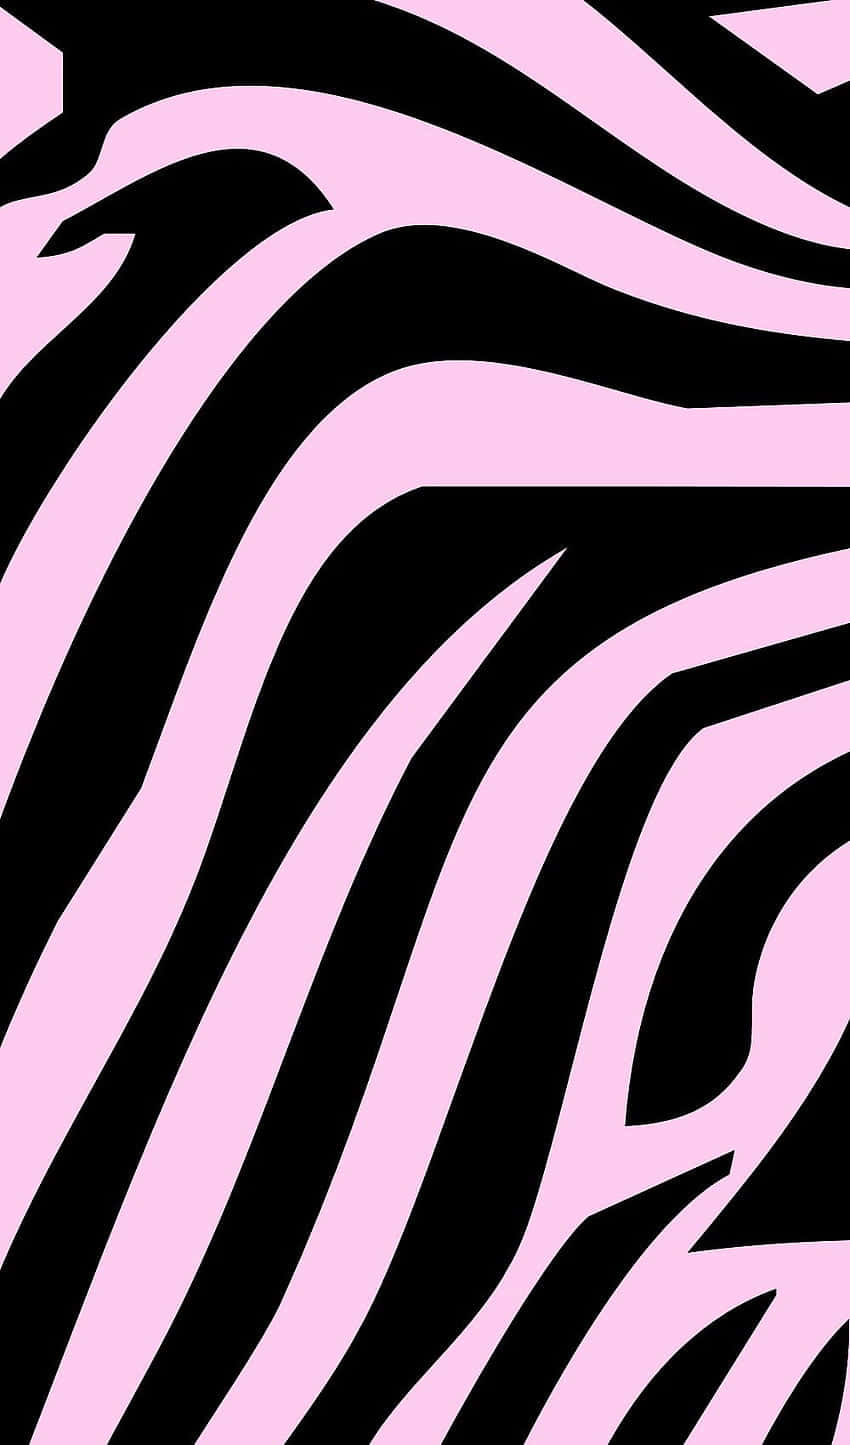 Unosfondo A Stampa Di Zebra Rosa E Nera Sfondo